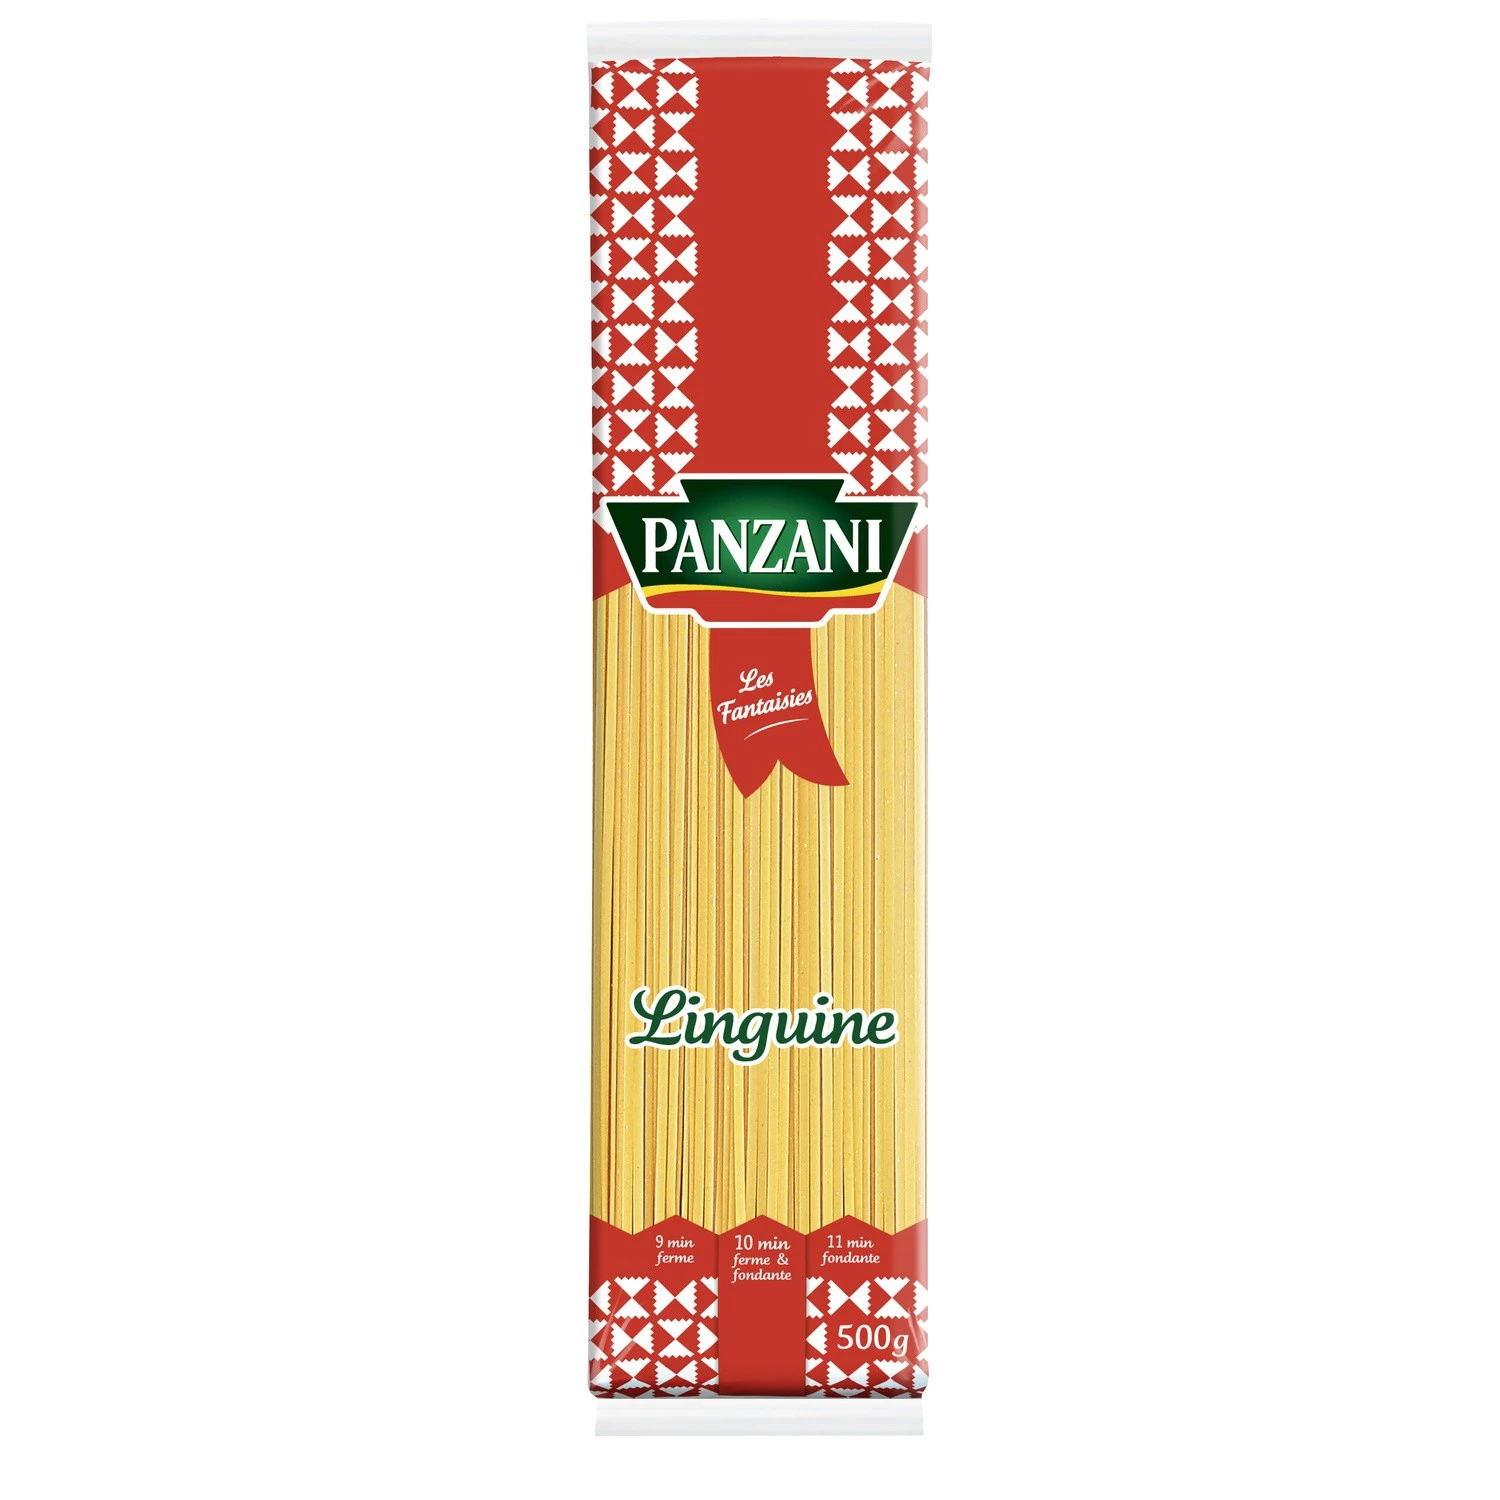 Linguine Spaghetti Nudeln 500g - PANZANI